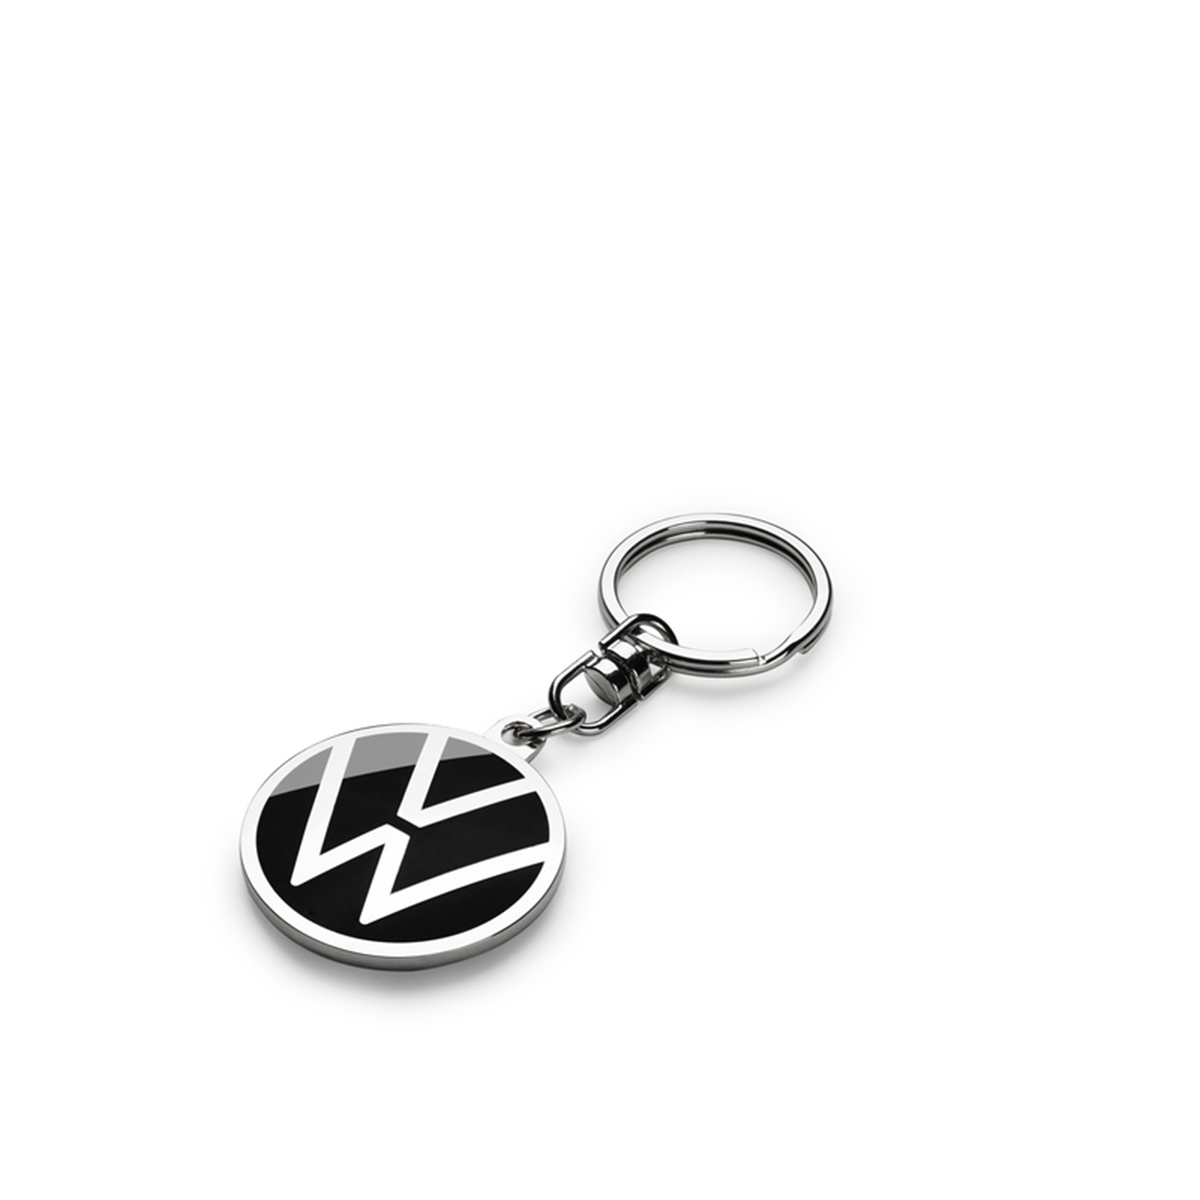 Volkswagen Schlüsselanhänger Metall New Volkswagen Logo Keyring Anhänger 000087010BQ 